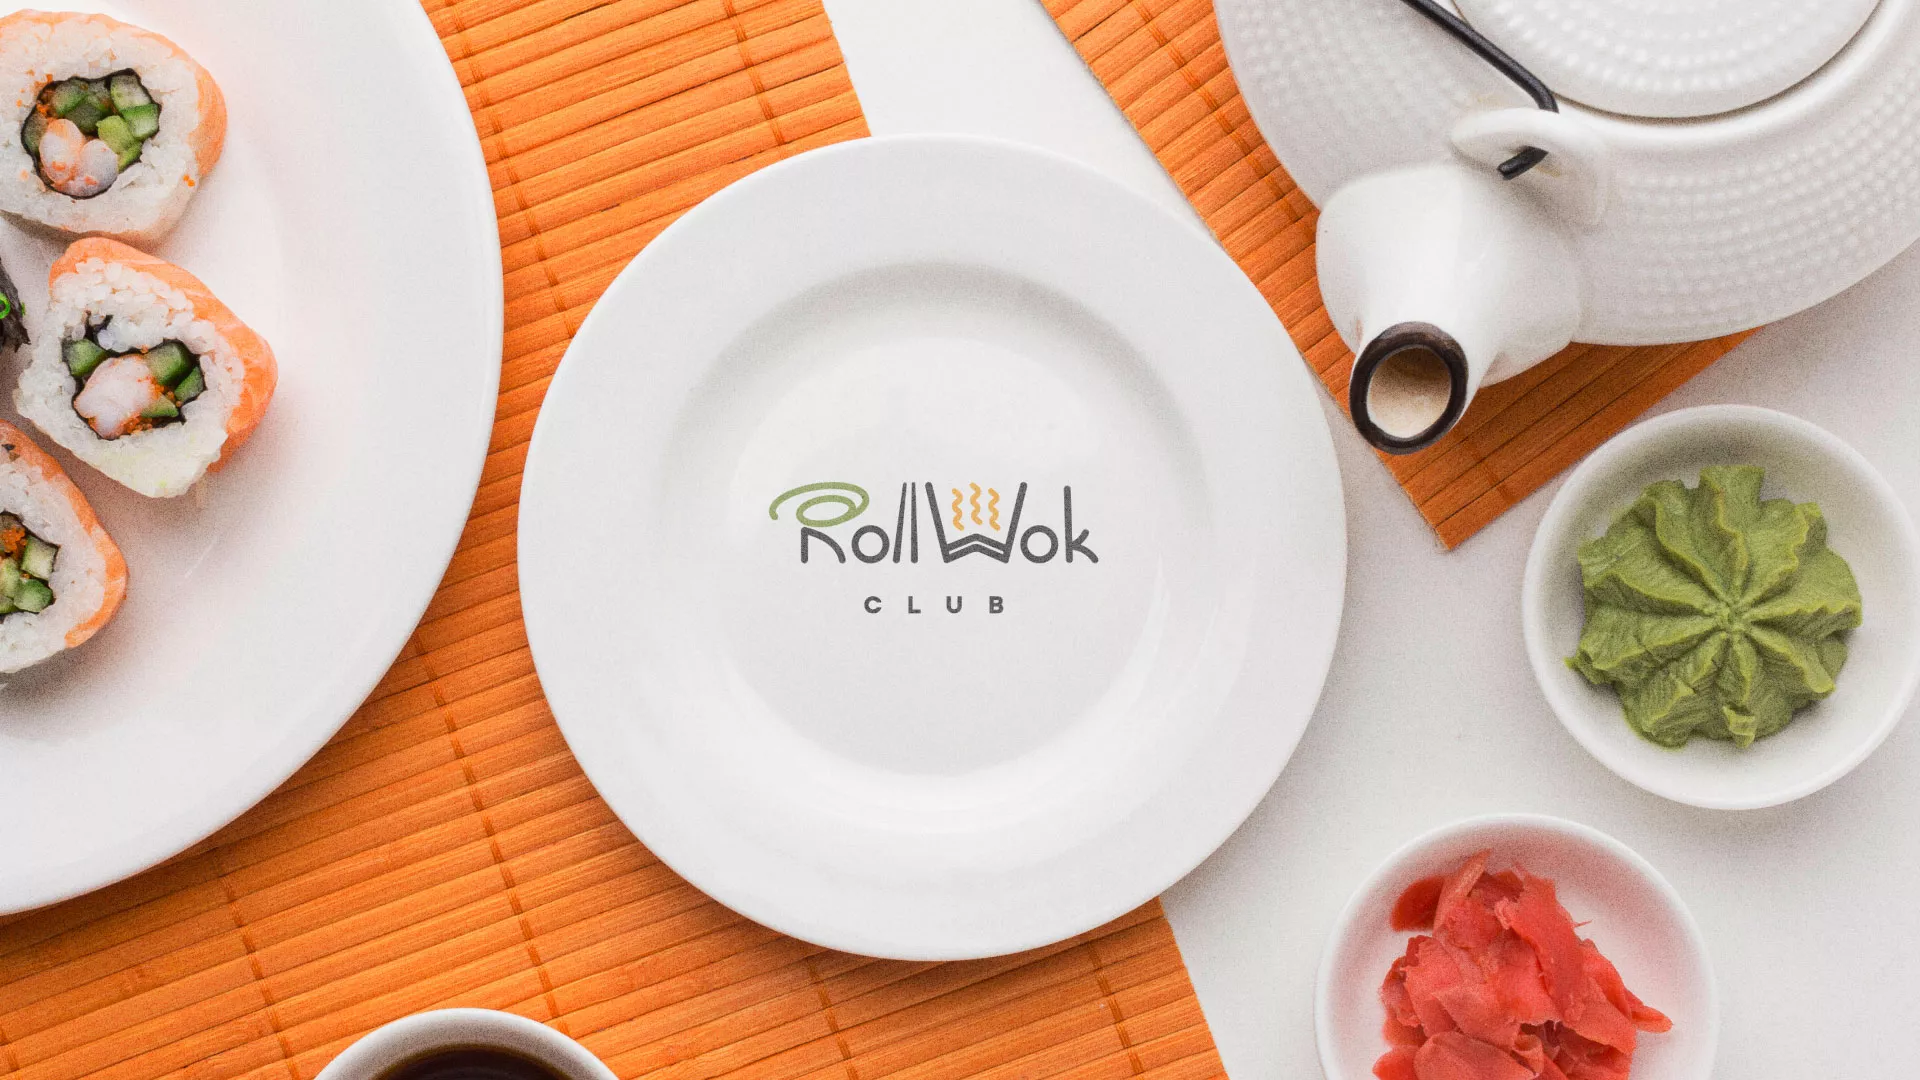 Разработка логотипа и фирменного стиля суши-бара «Roll Wok Club» в Дубовке